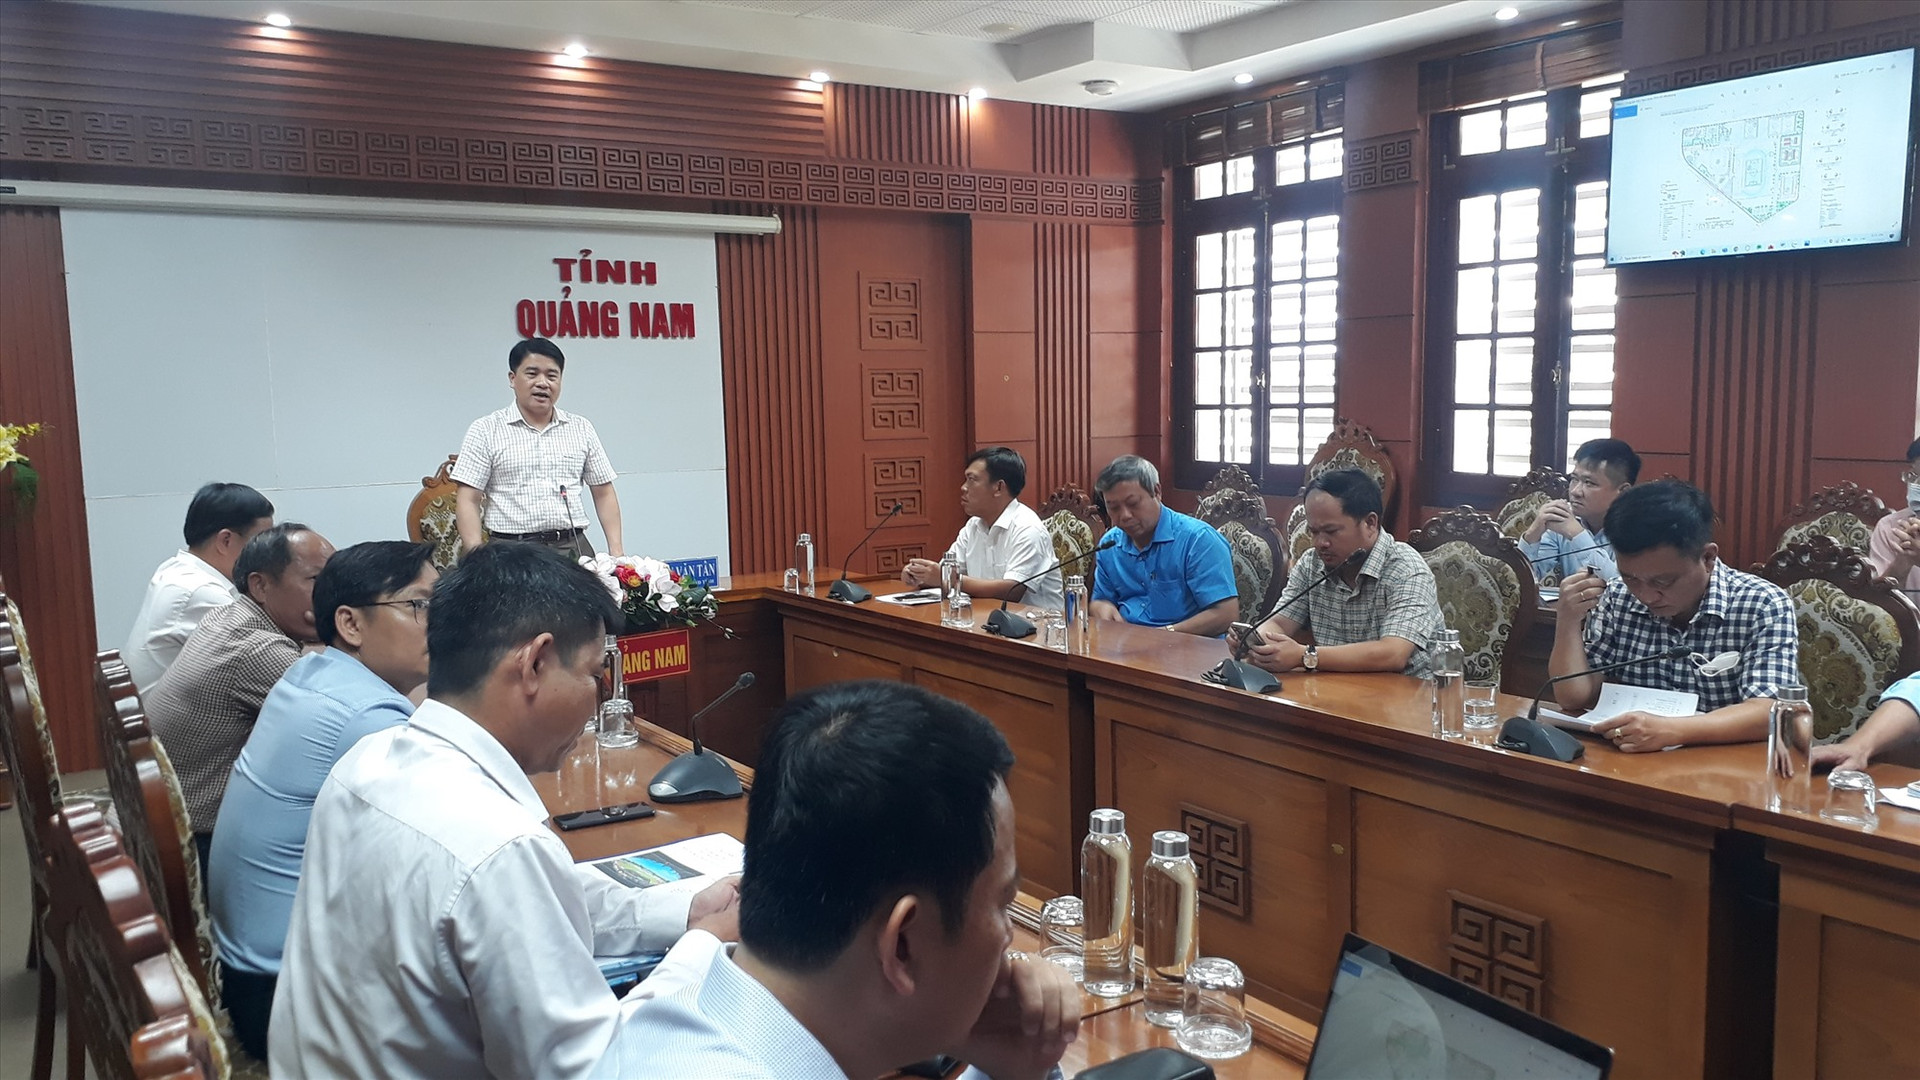 Phó Chủ tịch UBND tỉnh Trần Văn Tân yêu cầu sớm thực hiện cả 2 công việc để điều chỉnh cục bộ khu Trung tâm TD-TT tỉnh. Ảnh: X.P